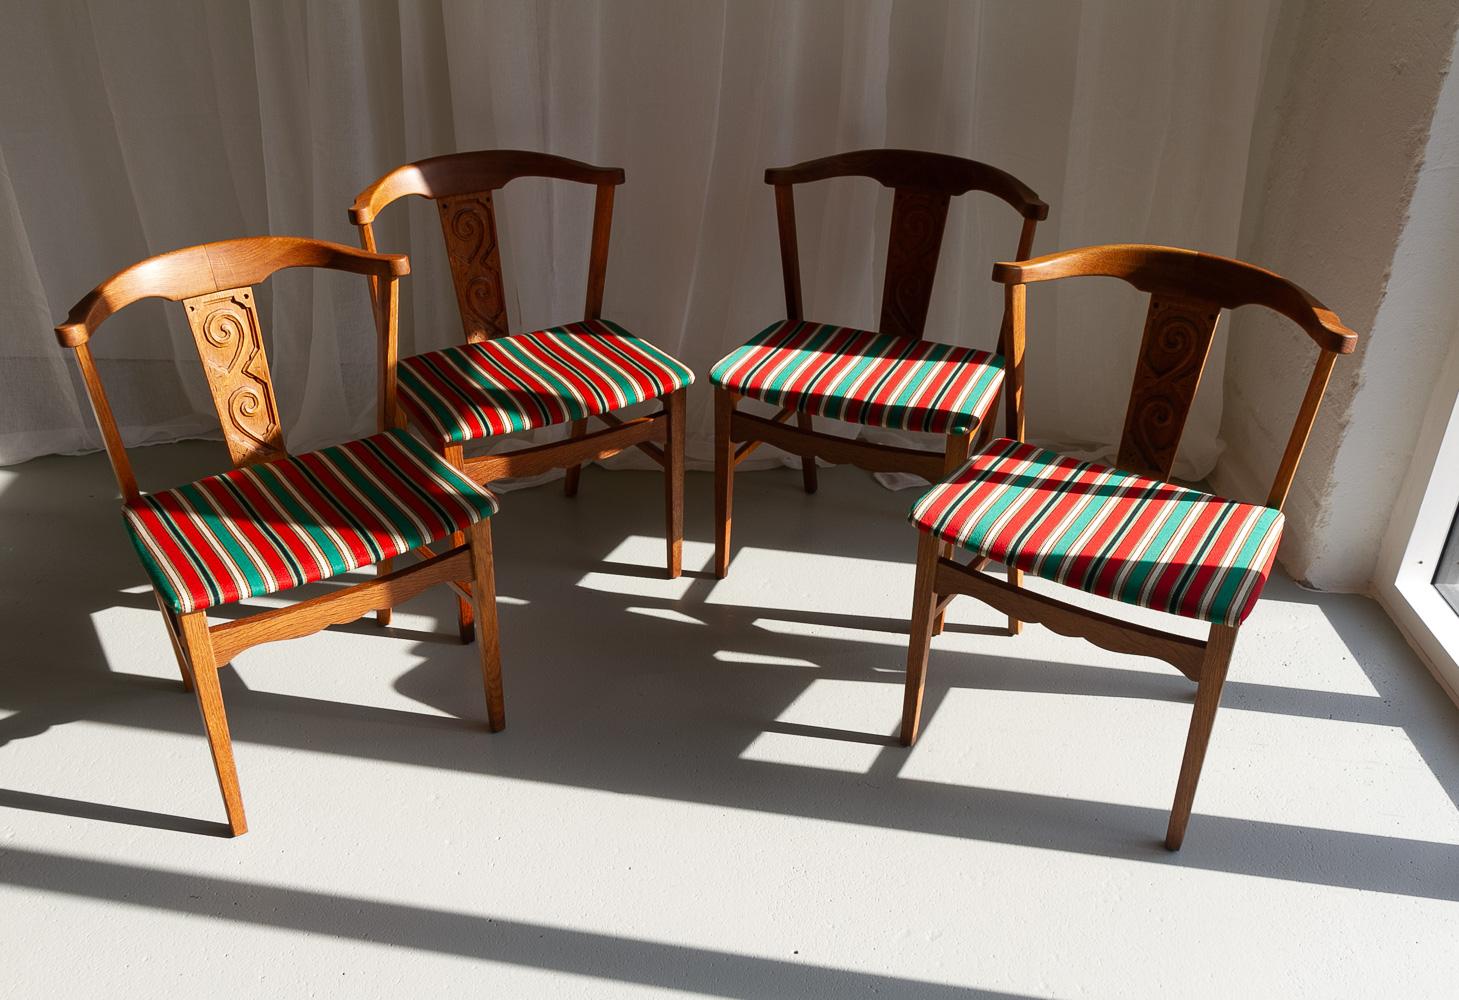 Scandinavian Modern Vintage Danish Oak Dining Chairs by Kjærnulf, 1960s. Set of 4. For Sale